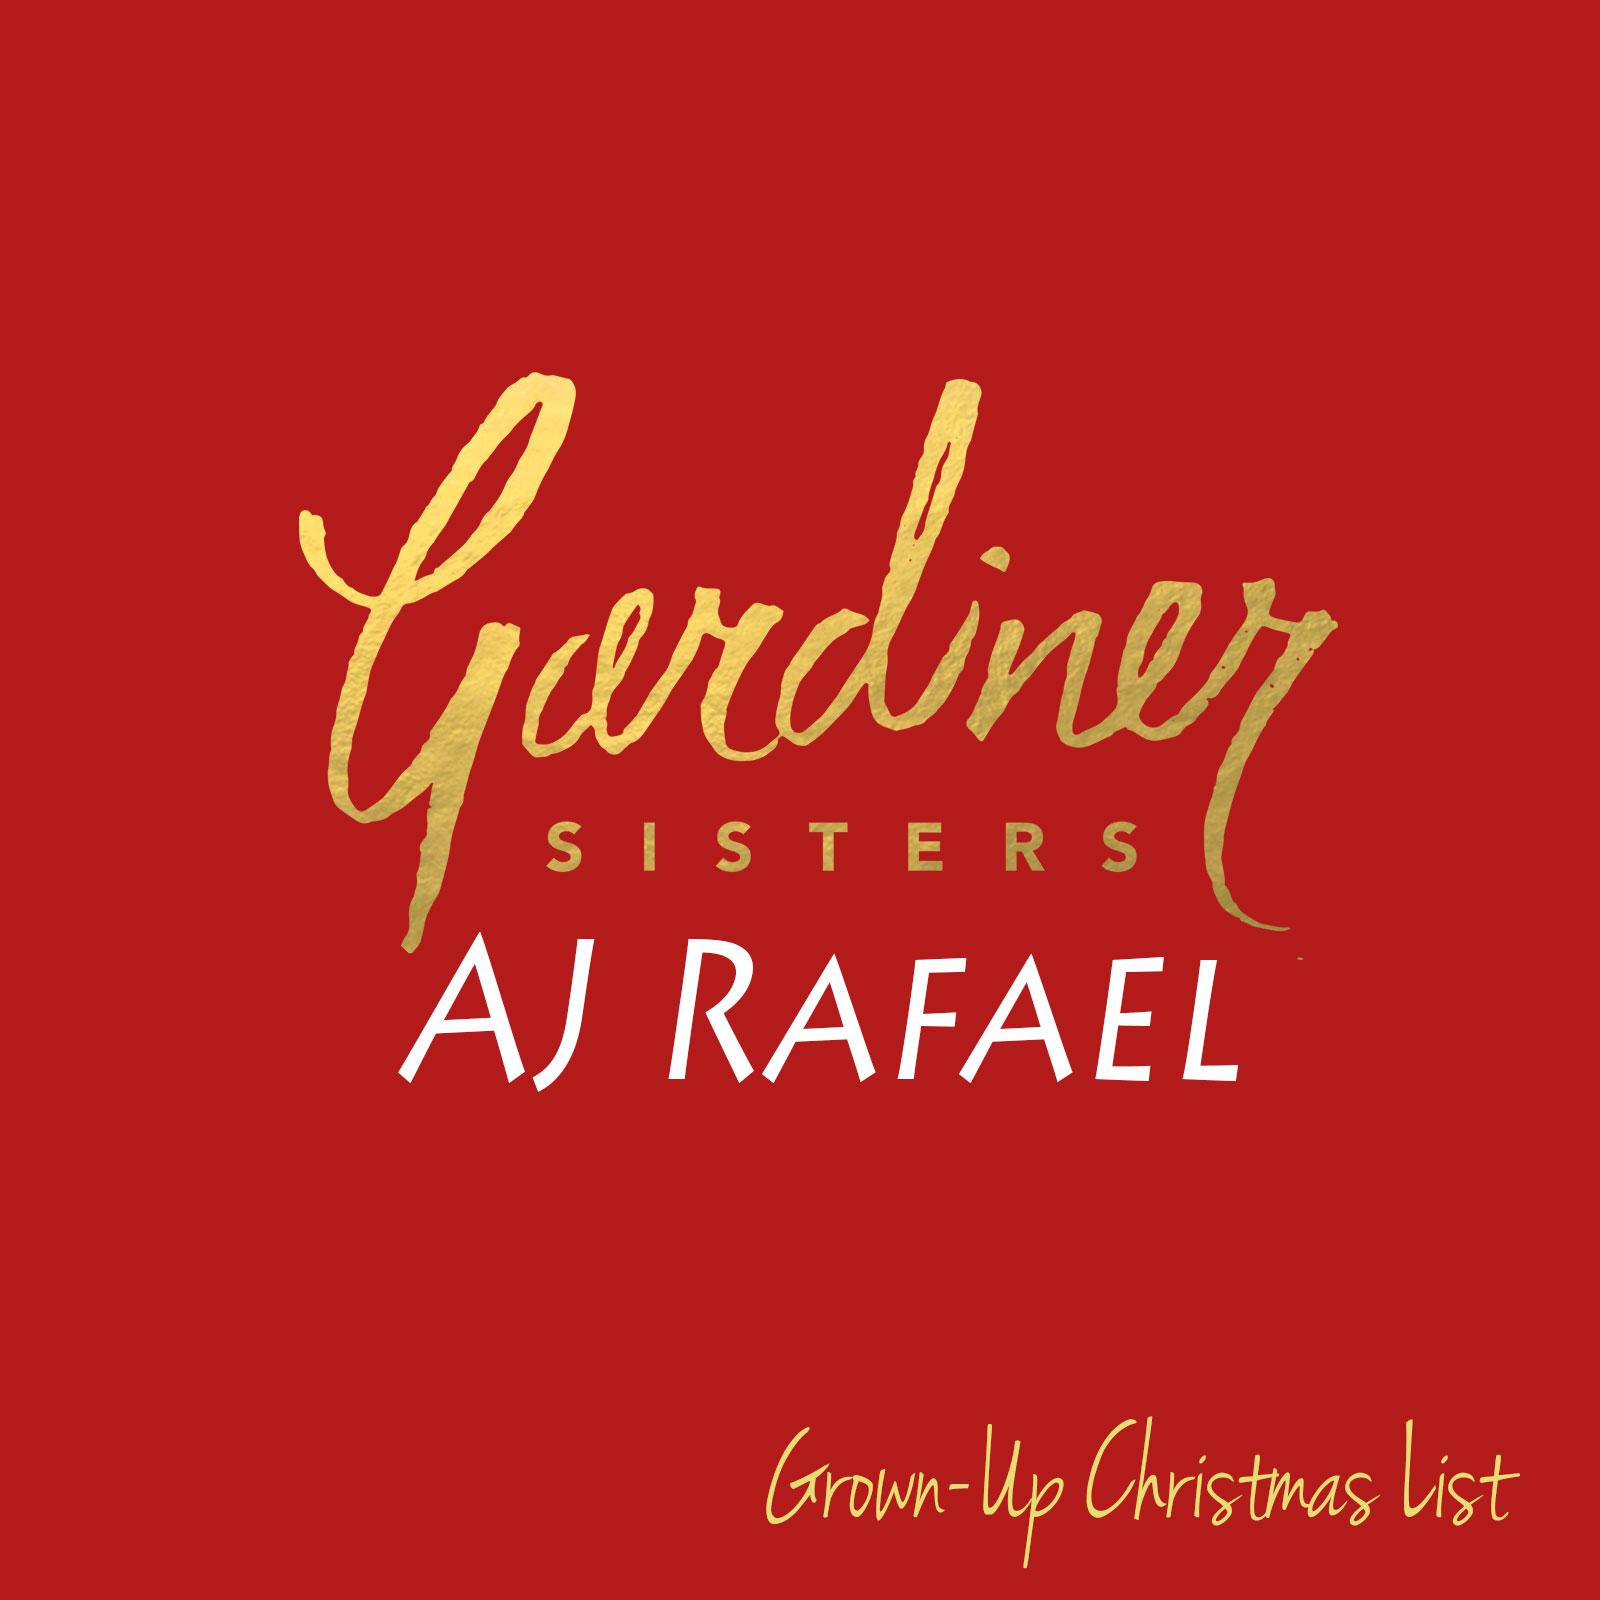 AJ Rafael - Grown-Up Christmas List